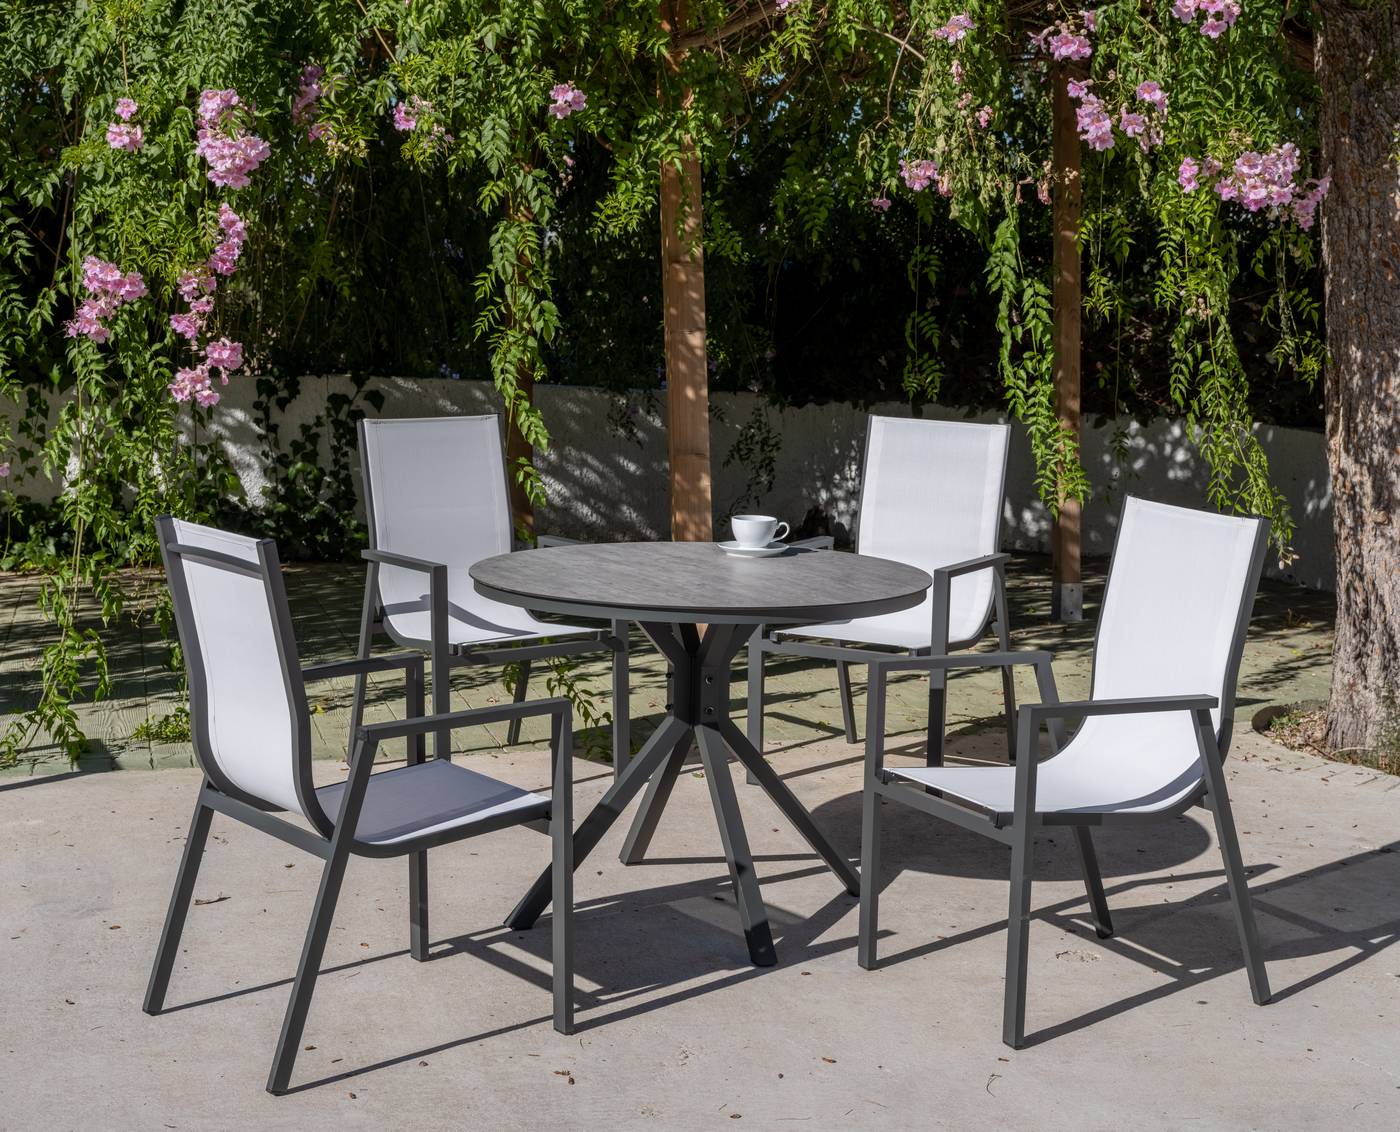 Conjunto Giglio100-Sidney - Conjunto aluminio: mesa redonda de 100 cm con tablero HPL + 4 sillones de alumino y textilen. Colores: blanco o antracita.